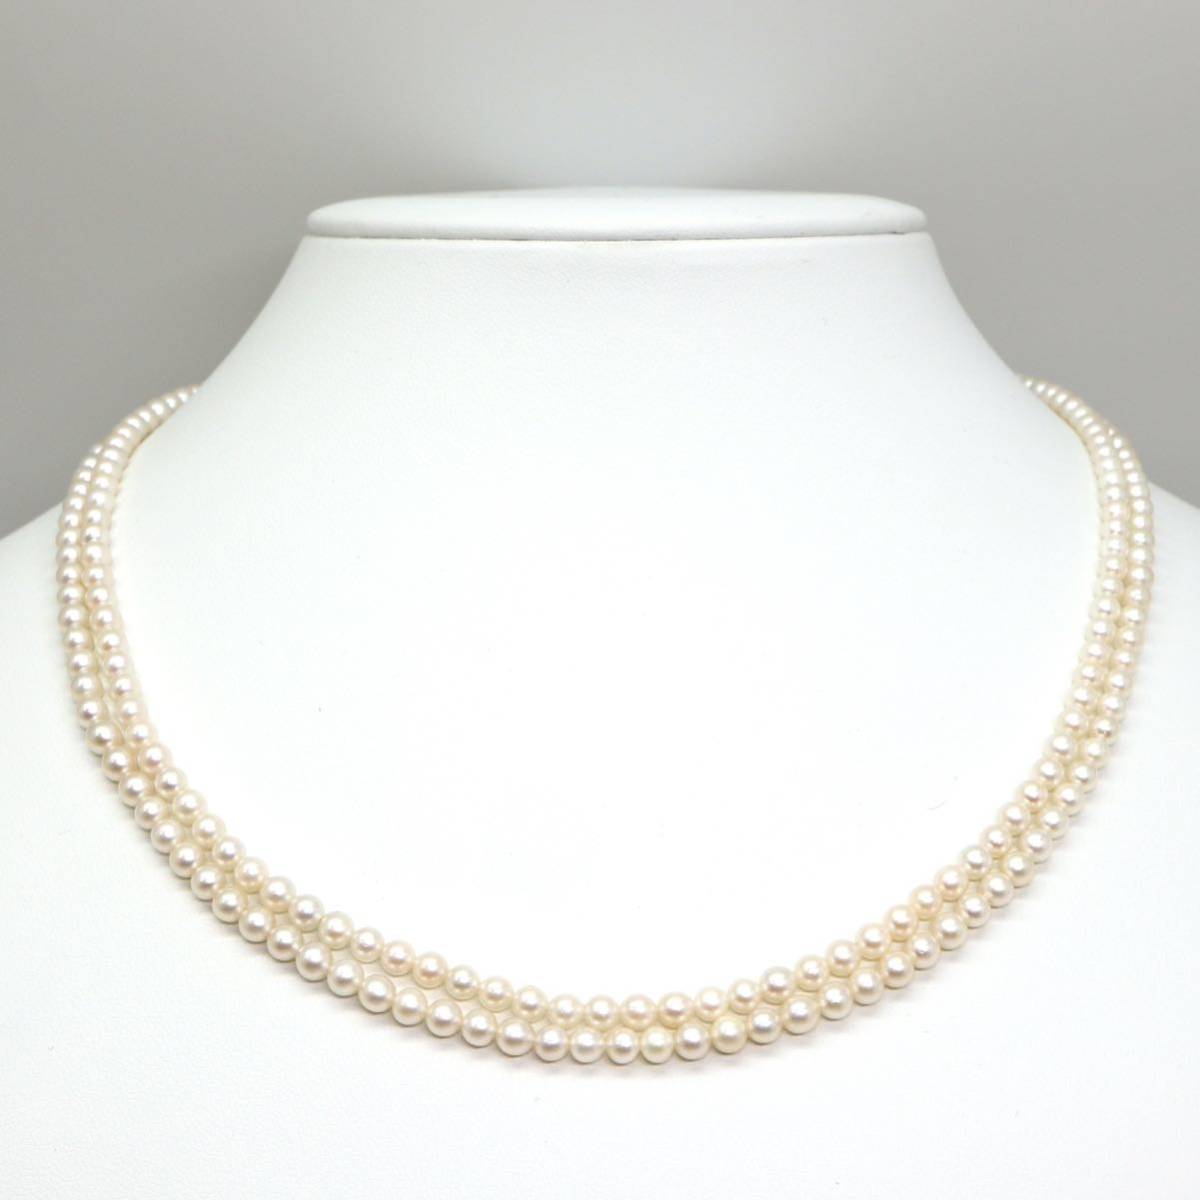 ◆アコヤ本真珠2連ネックレス⑩◆M 約21.0g 約45.0cm 3.5-4.0mm珠 pearl パール jewelry necklace ジュエリーDE0/EB0_画像2